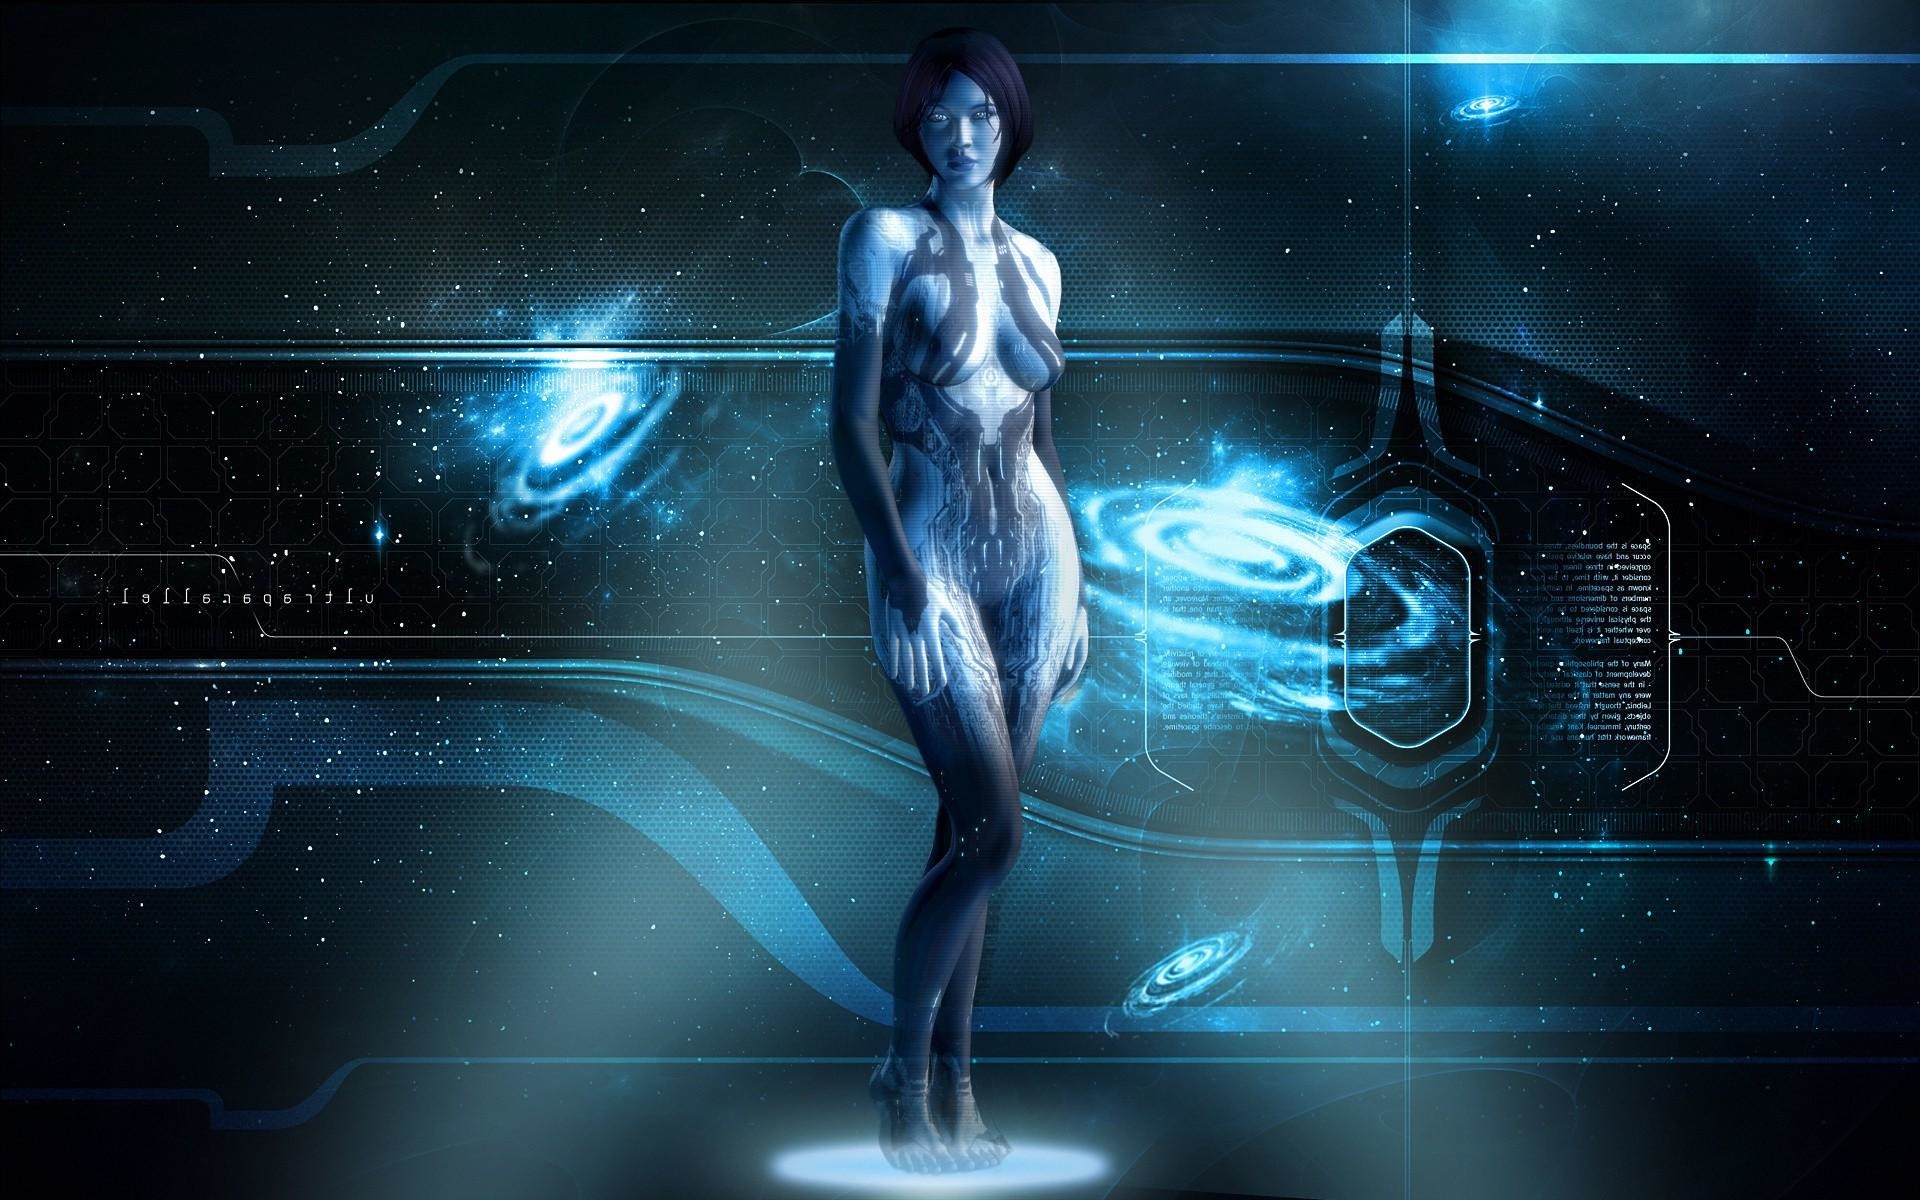 Halo 4 Cortana Wallpaper 72 Images